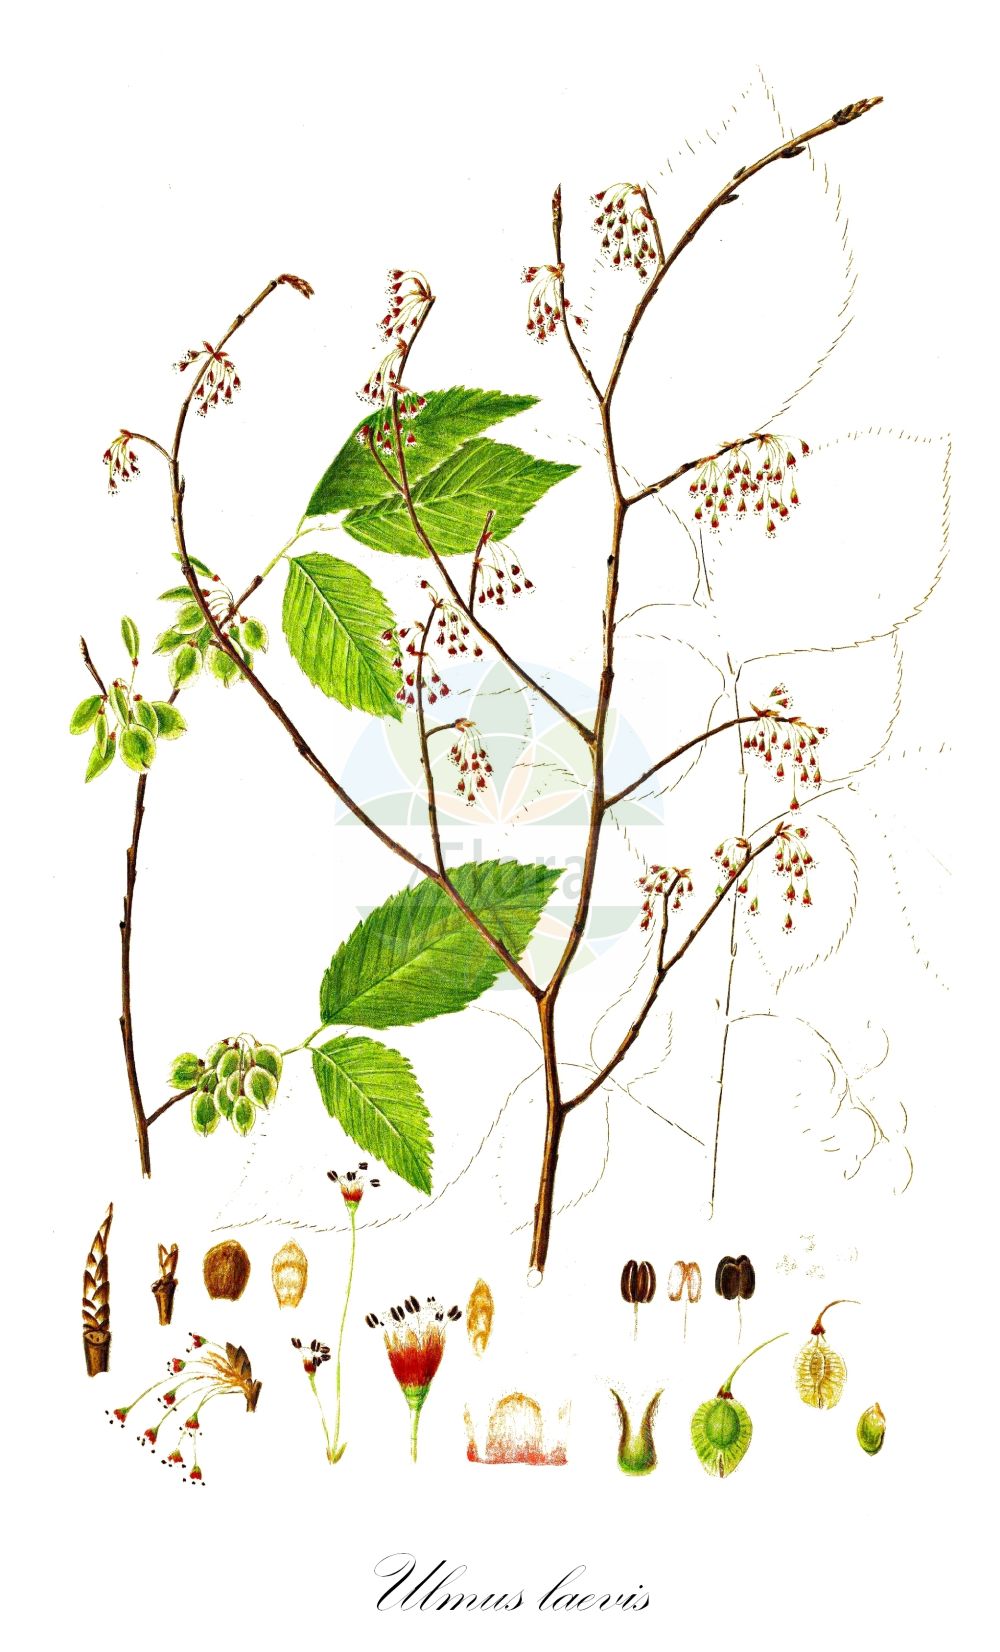 Historische Abbildung von Ulmus laevis (Flatter-Ulme - European White-elm). Das Bild zeigt Blatt, Bluete, Frucht und Same. ---- Historical Drawing of Ulmus laevis (Flatter-Ulme - European White-elm). The image is showing leaf, flower, fruit and seed.(Ulmus laevis,Flatter-Ulme,European White-elm,Ulmus effusa,Ulmus laevis,Ulmus pedunculata,Flatter-Ulme,European White-elm,Fluttering Elm,Spreading-branched Elm,Ulmus,Ulme,Elm,Ulmaceae,Ulmengewächse,Elm family,Blatt,Bluete,Frucht,Same,leaf,flower,fruit,seed,Oeder (1761-1883))